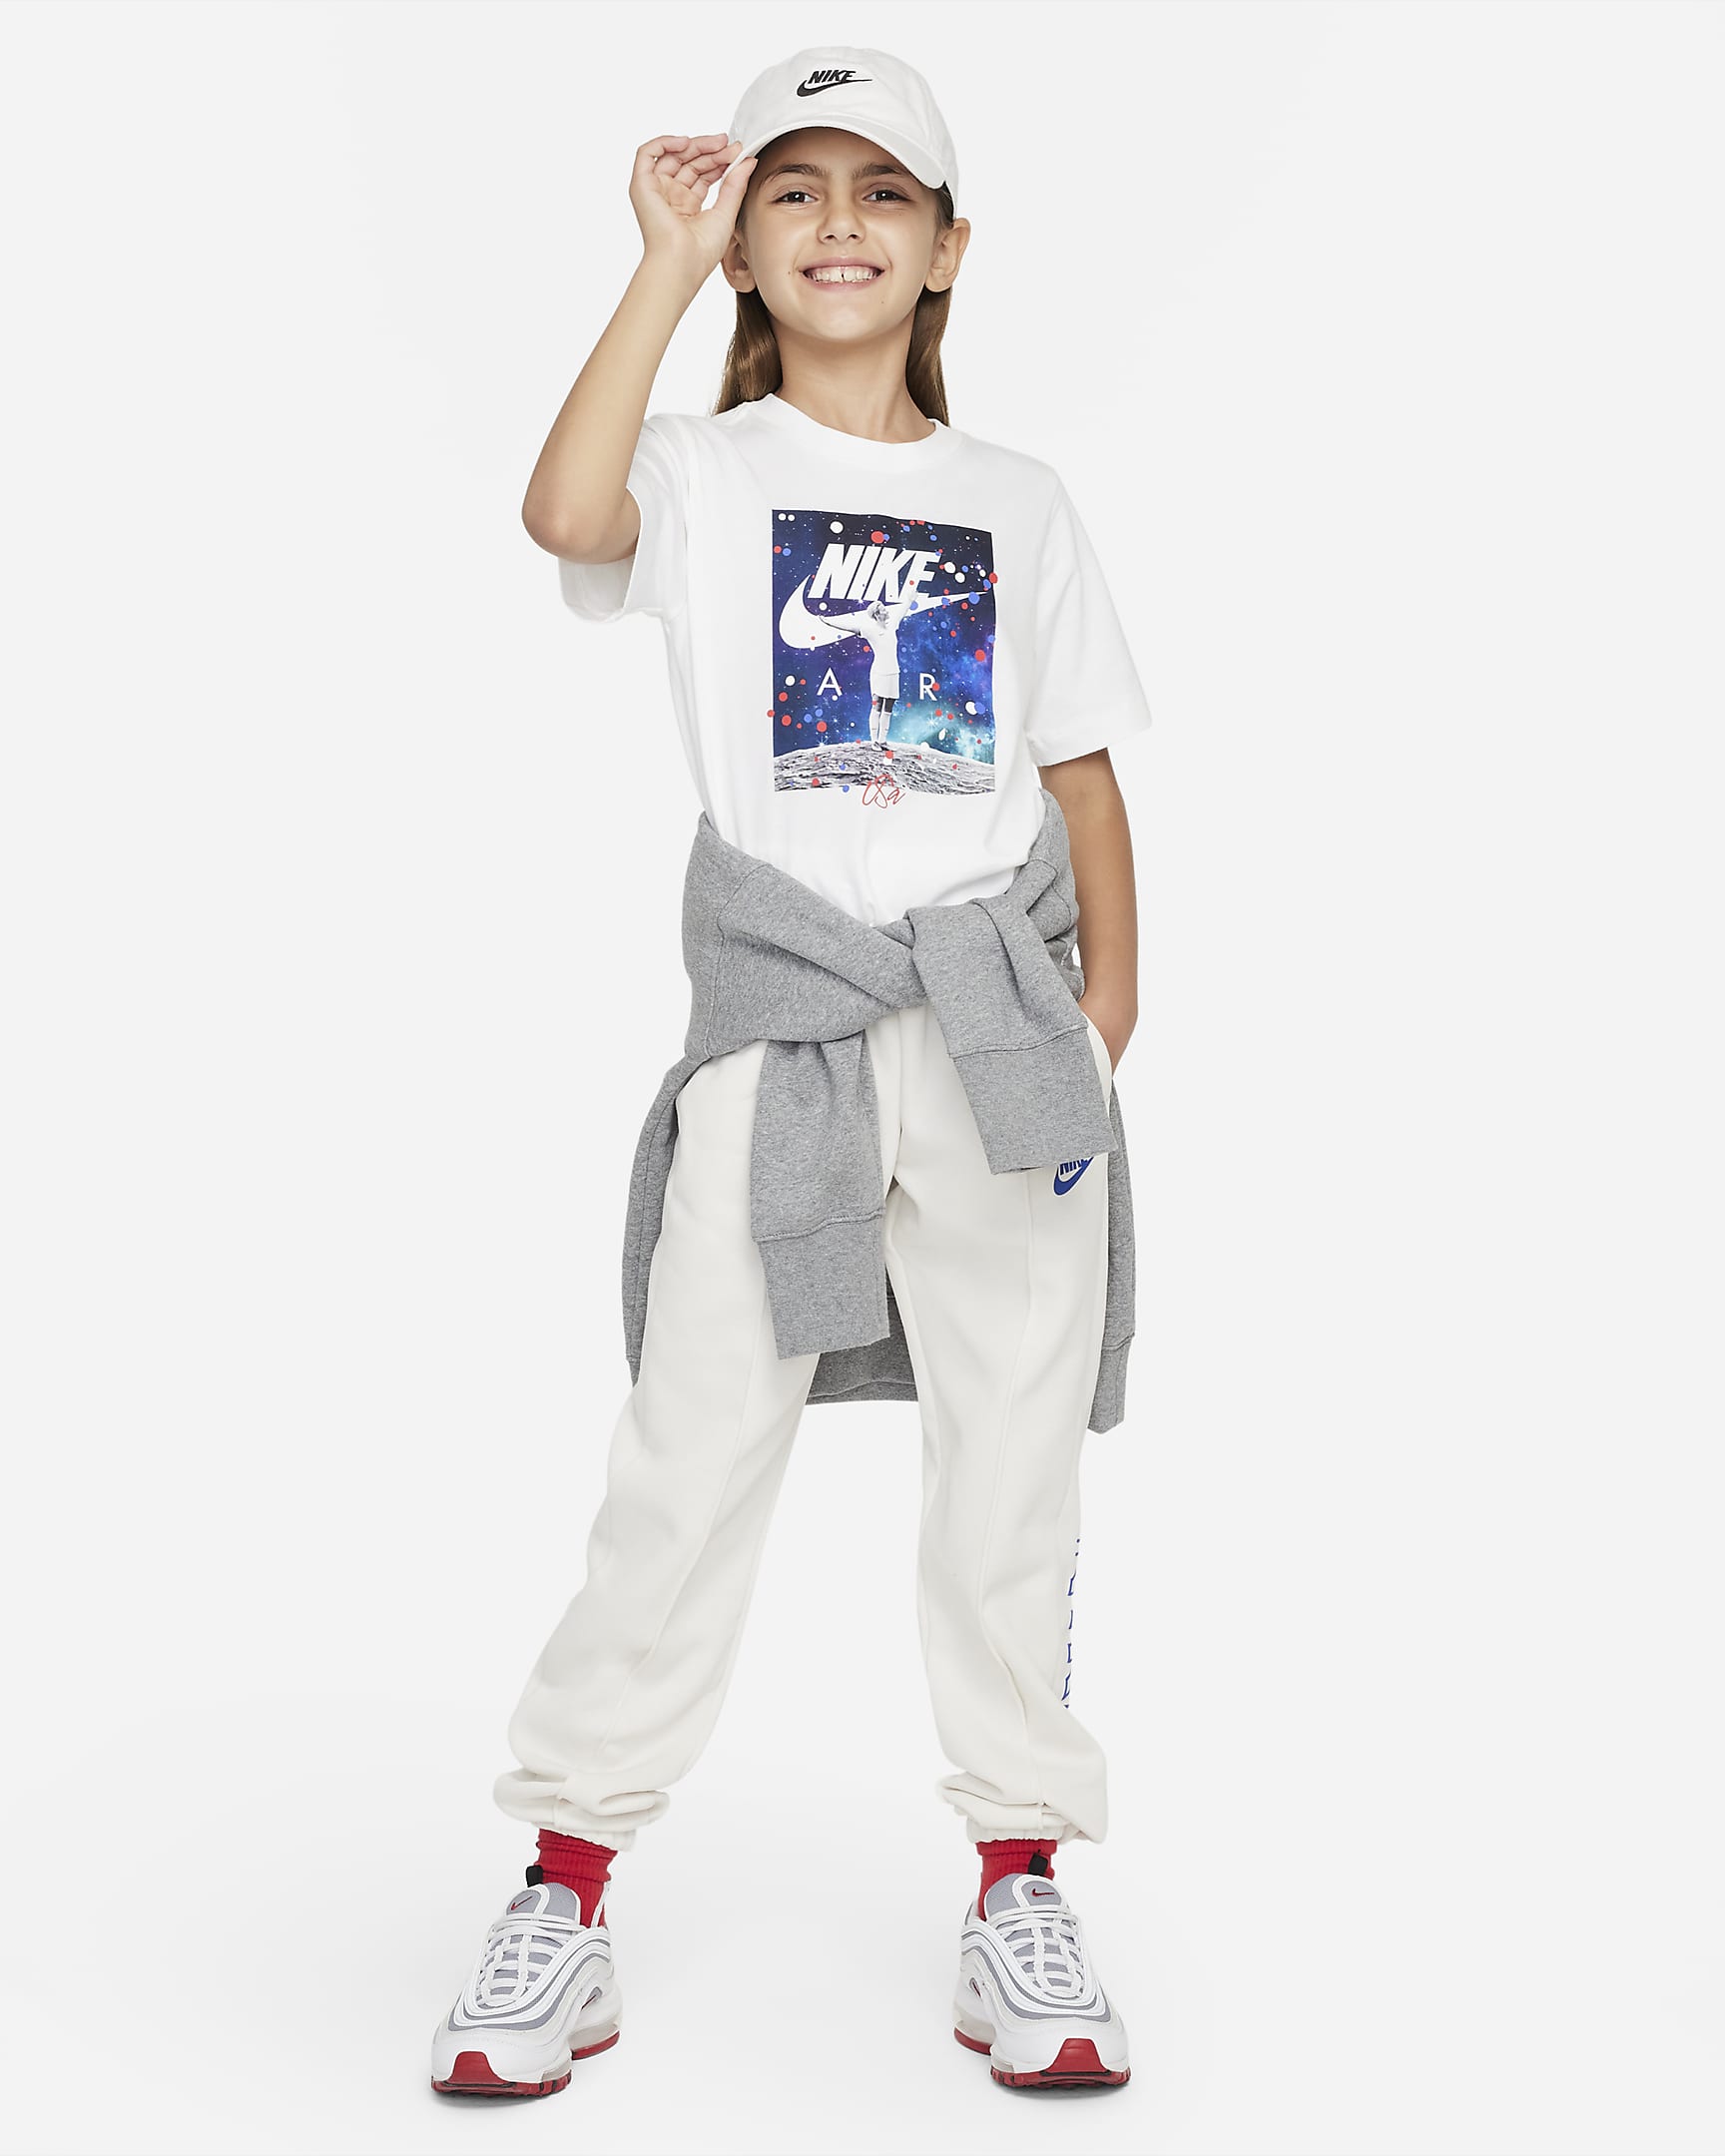 Megan Rapinoe USWNT Photo Big Kids' Nike Soccer T-Shirt. Nike.com